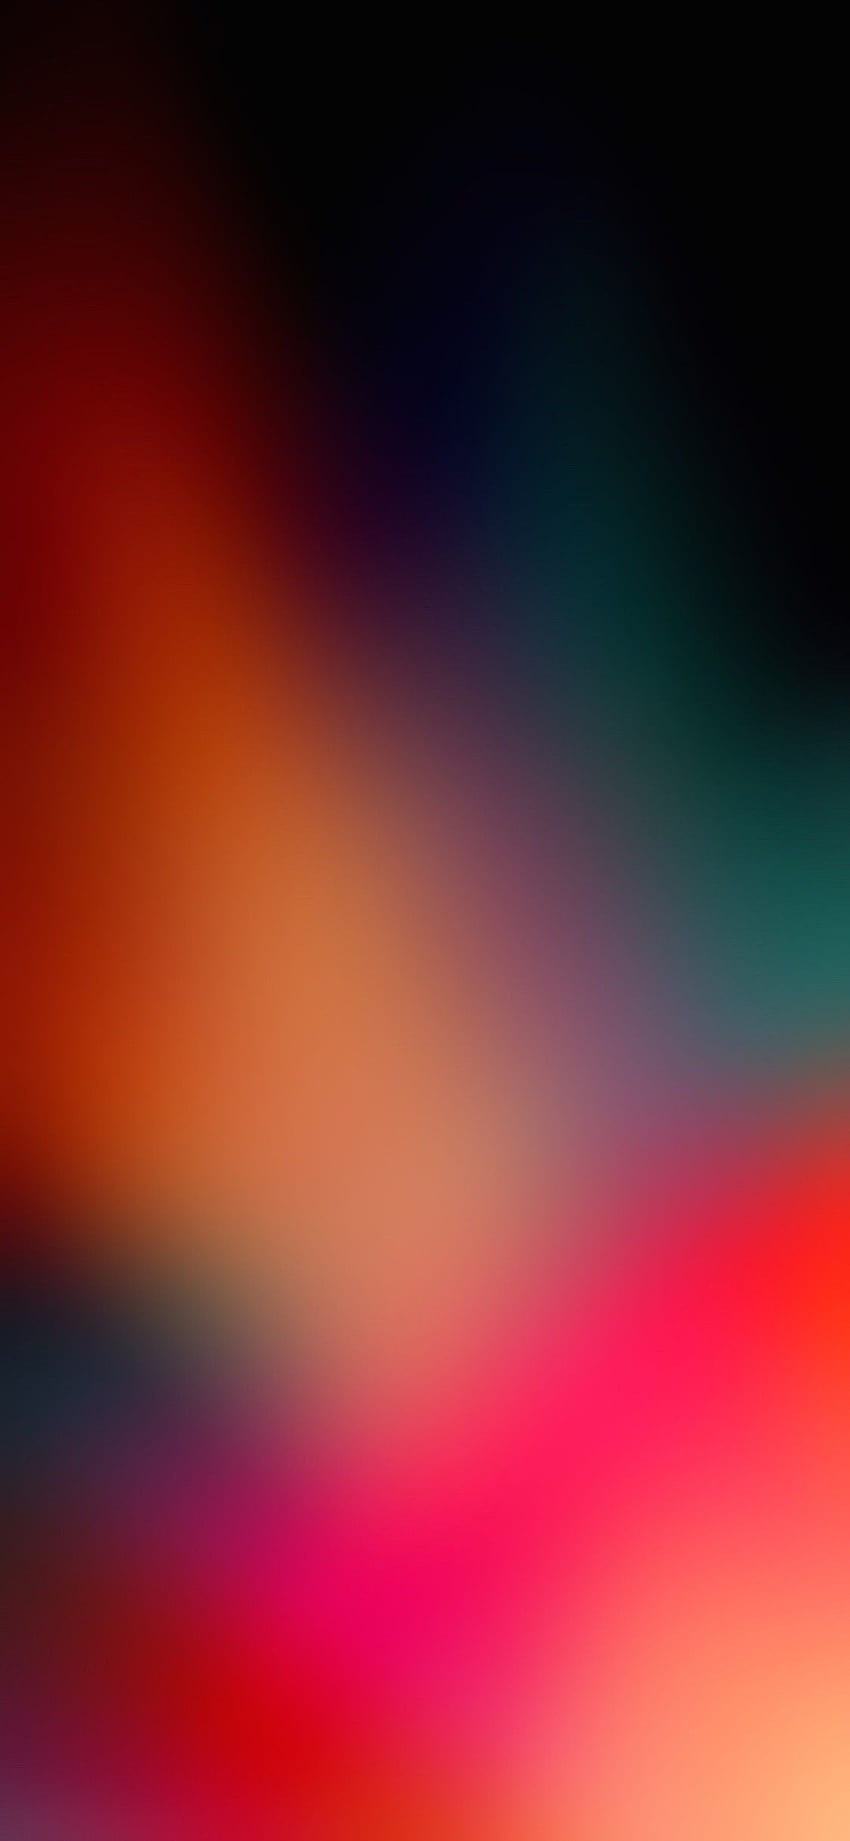 3 Colour Backgrounds, color mix iphone HD phone wallpaper | Pxfuel